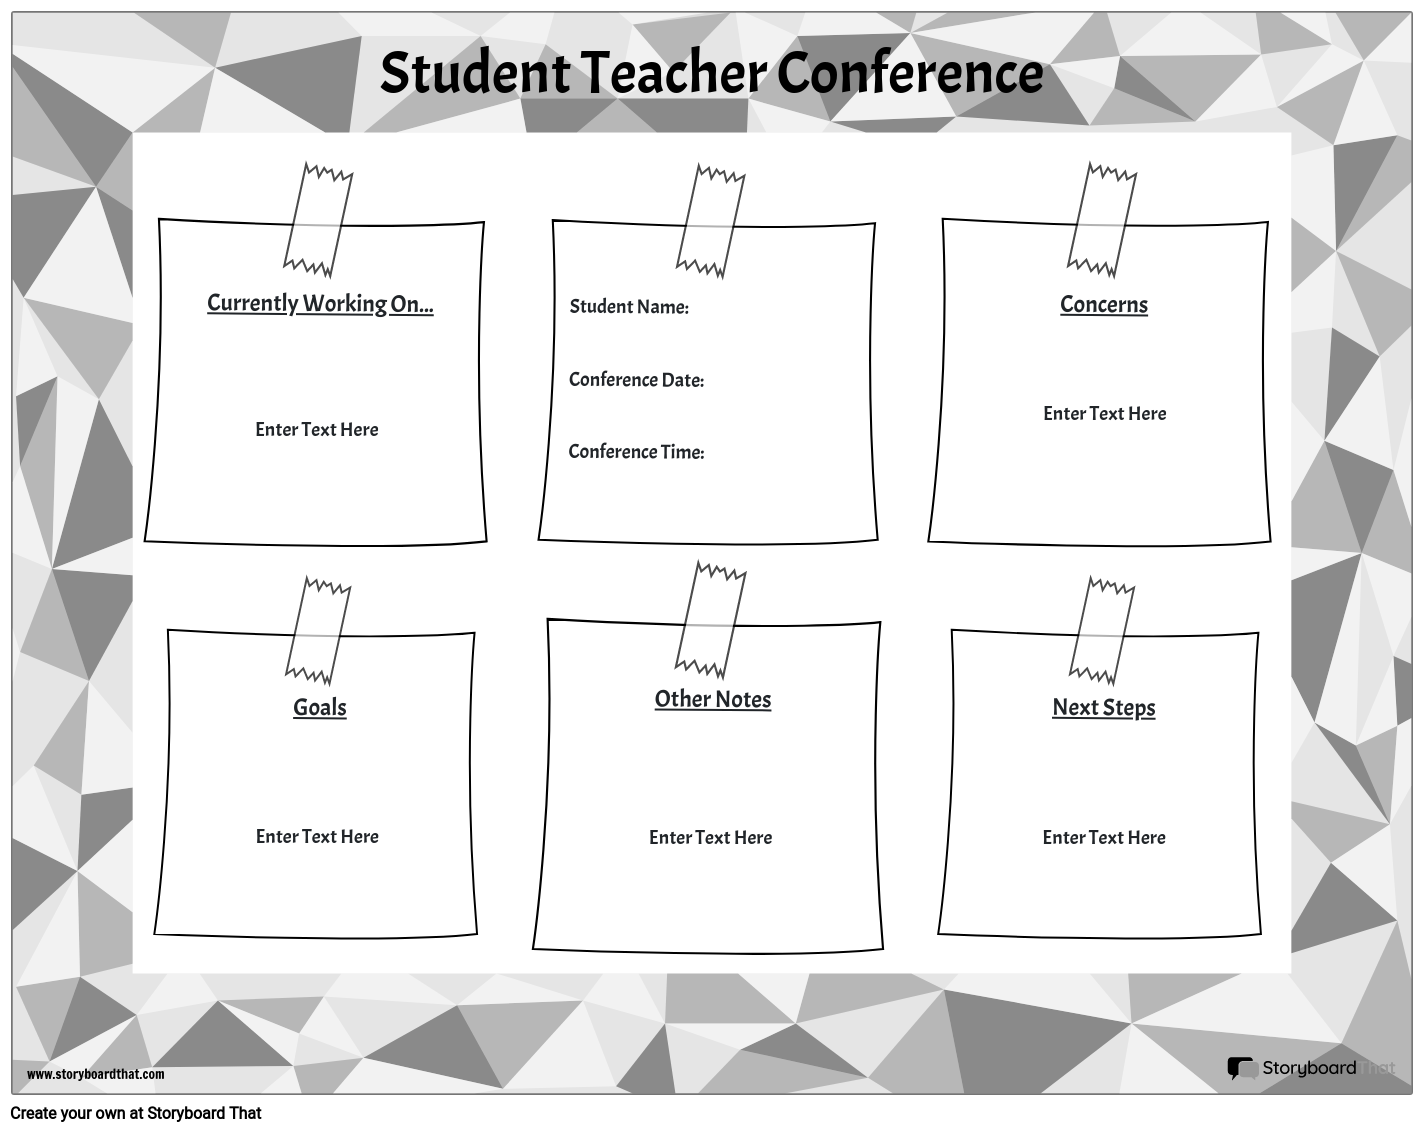 Конференция Студентов с Учителями 6